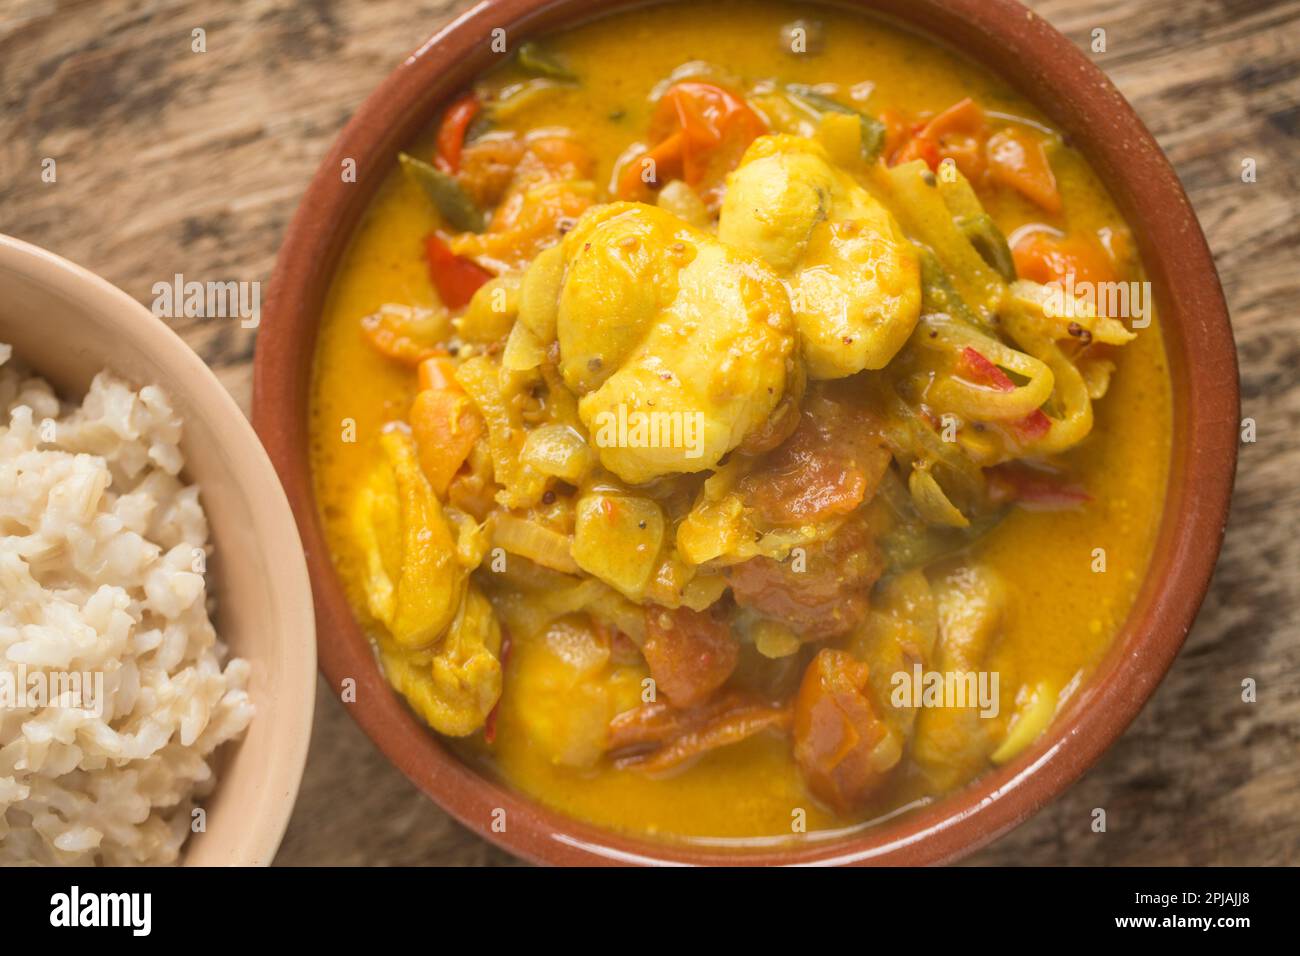 Curry de poisson fait maison avec des joues de rayon de épine et comprenant du lait de coco, des piments, des tomates et des épices. Angleterre GB Banque D'Images